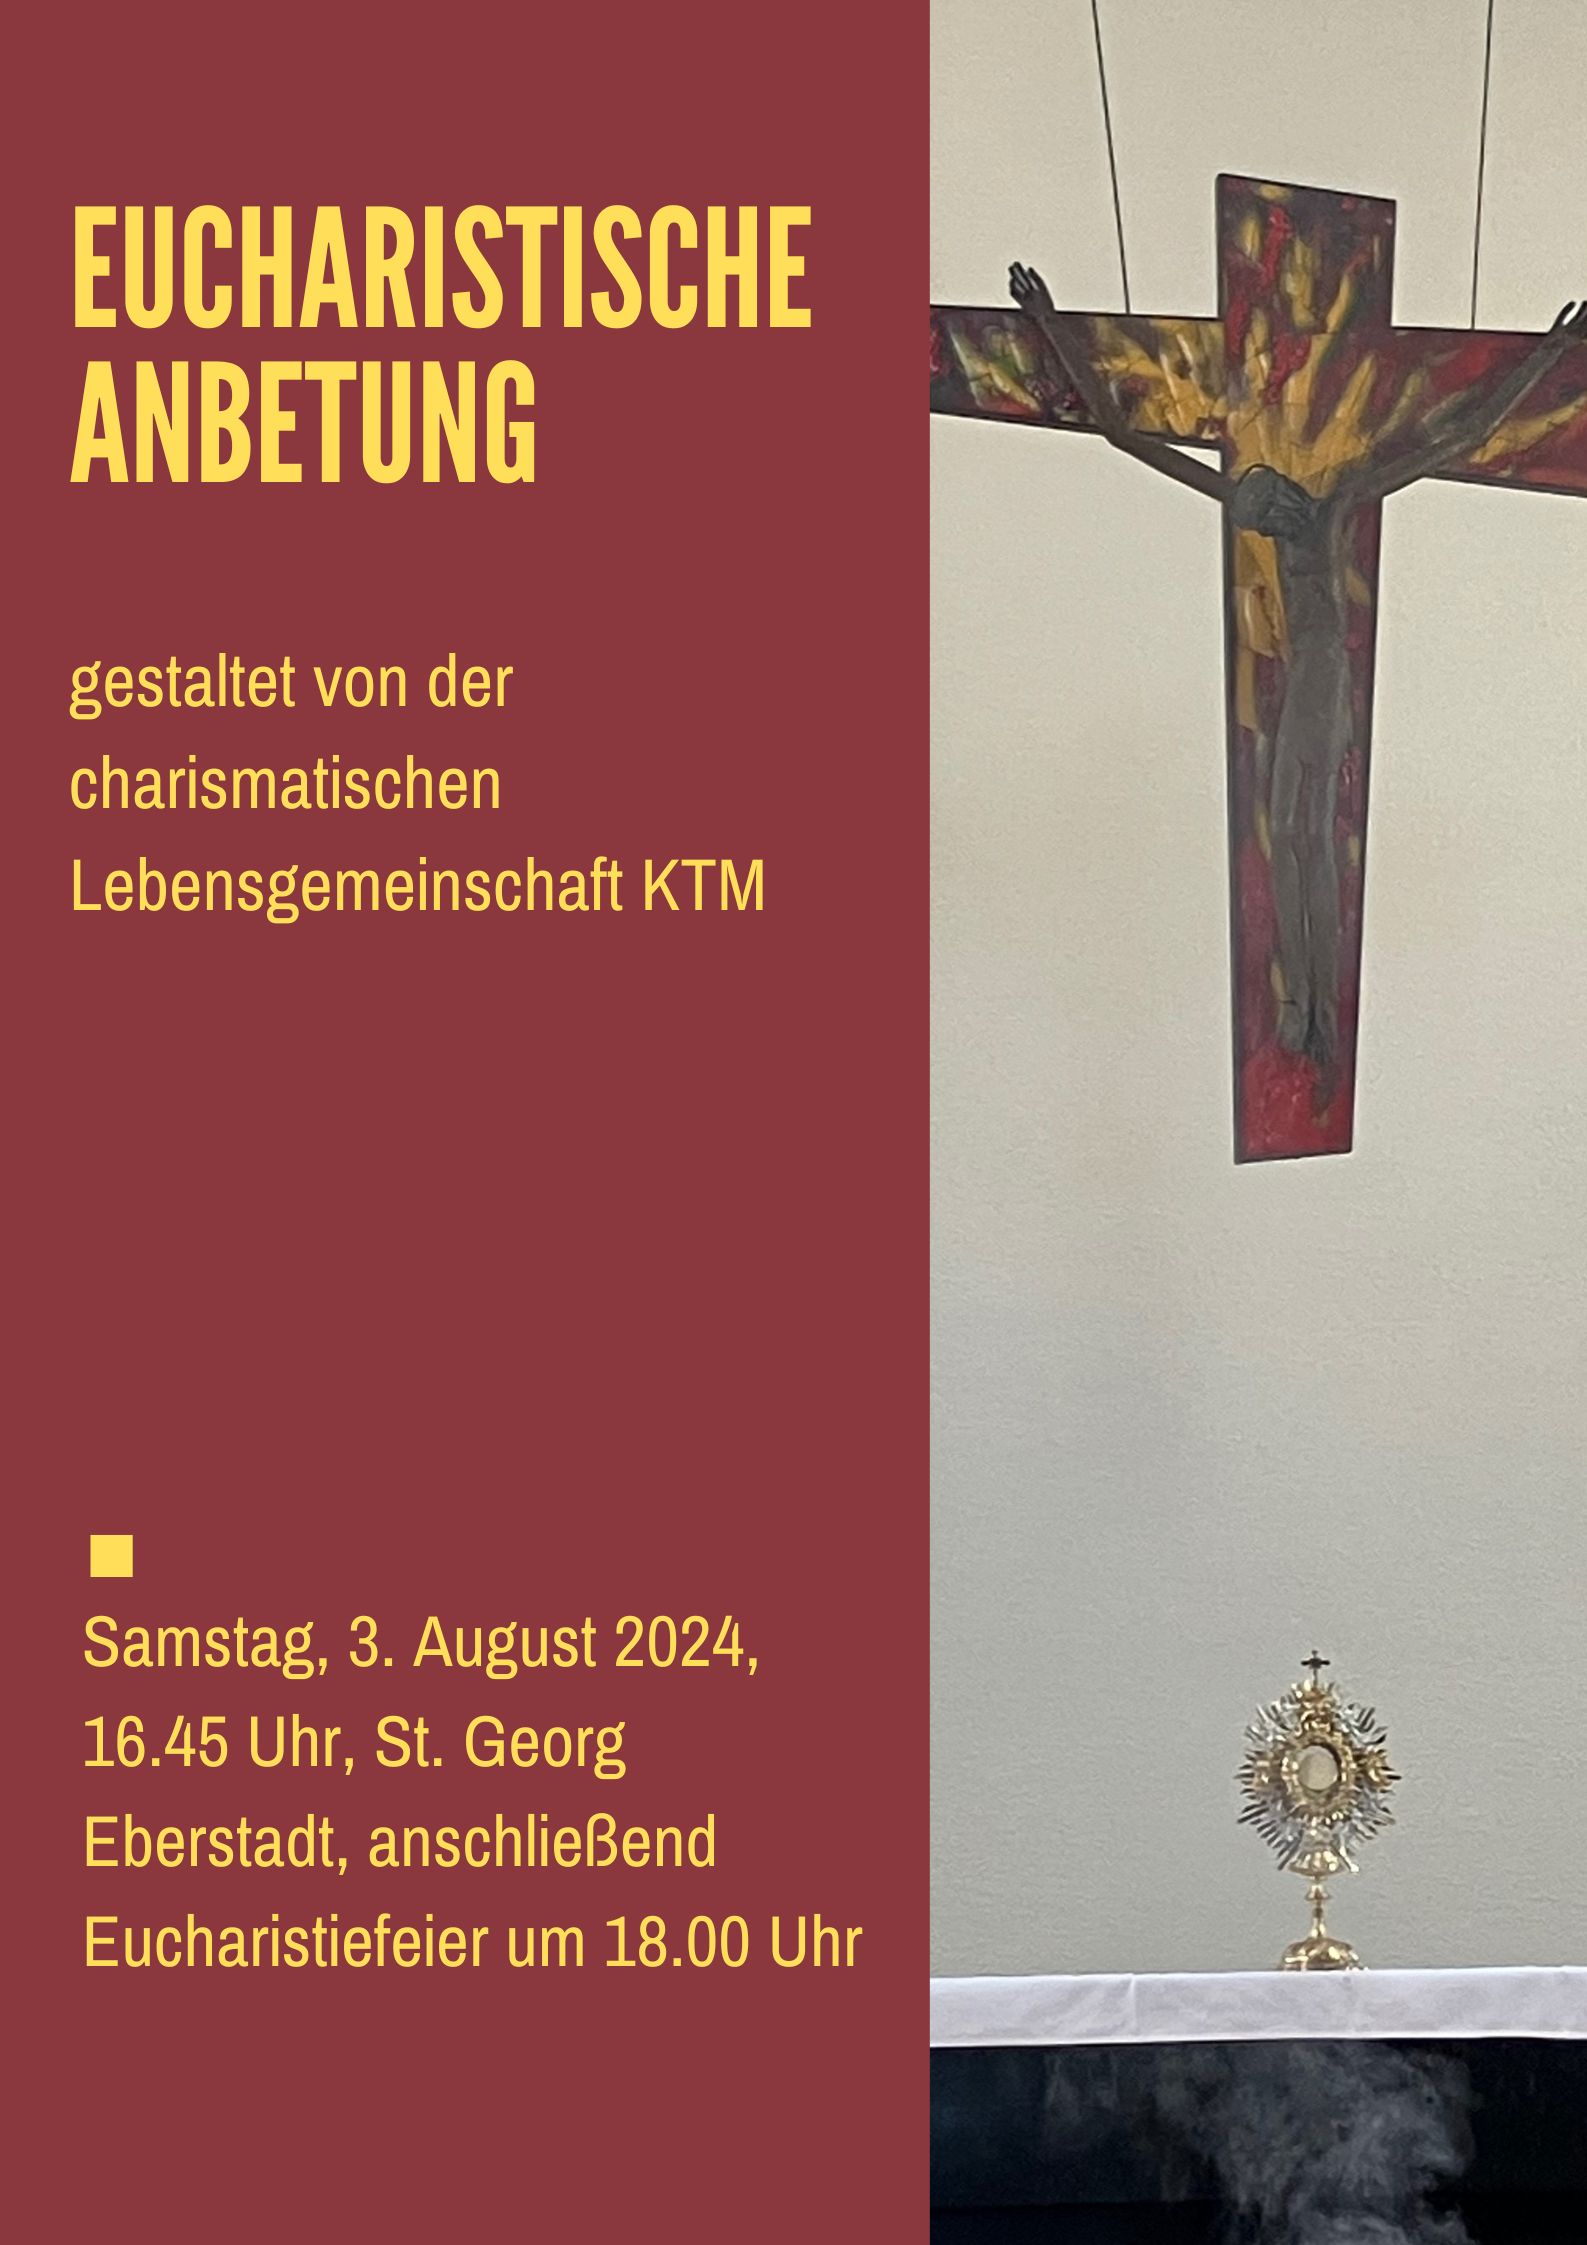 Eucharsitische Anbetung August 2024 (c) Christoph Nowak